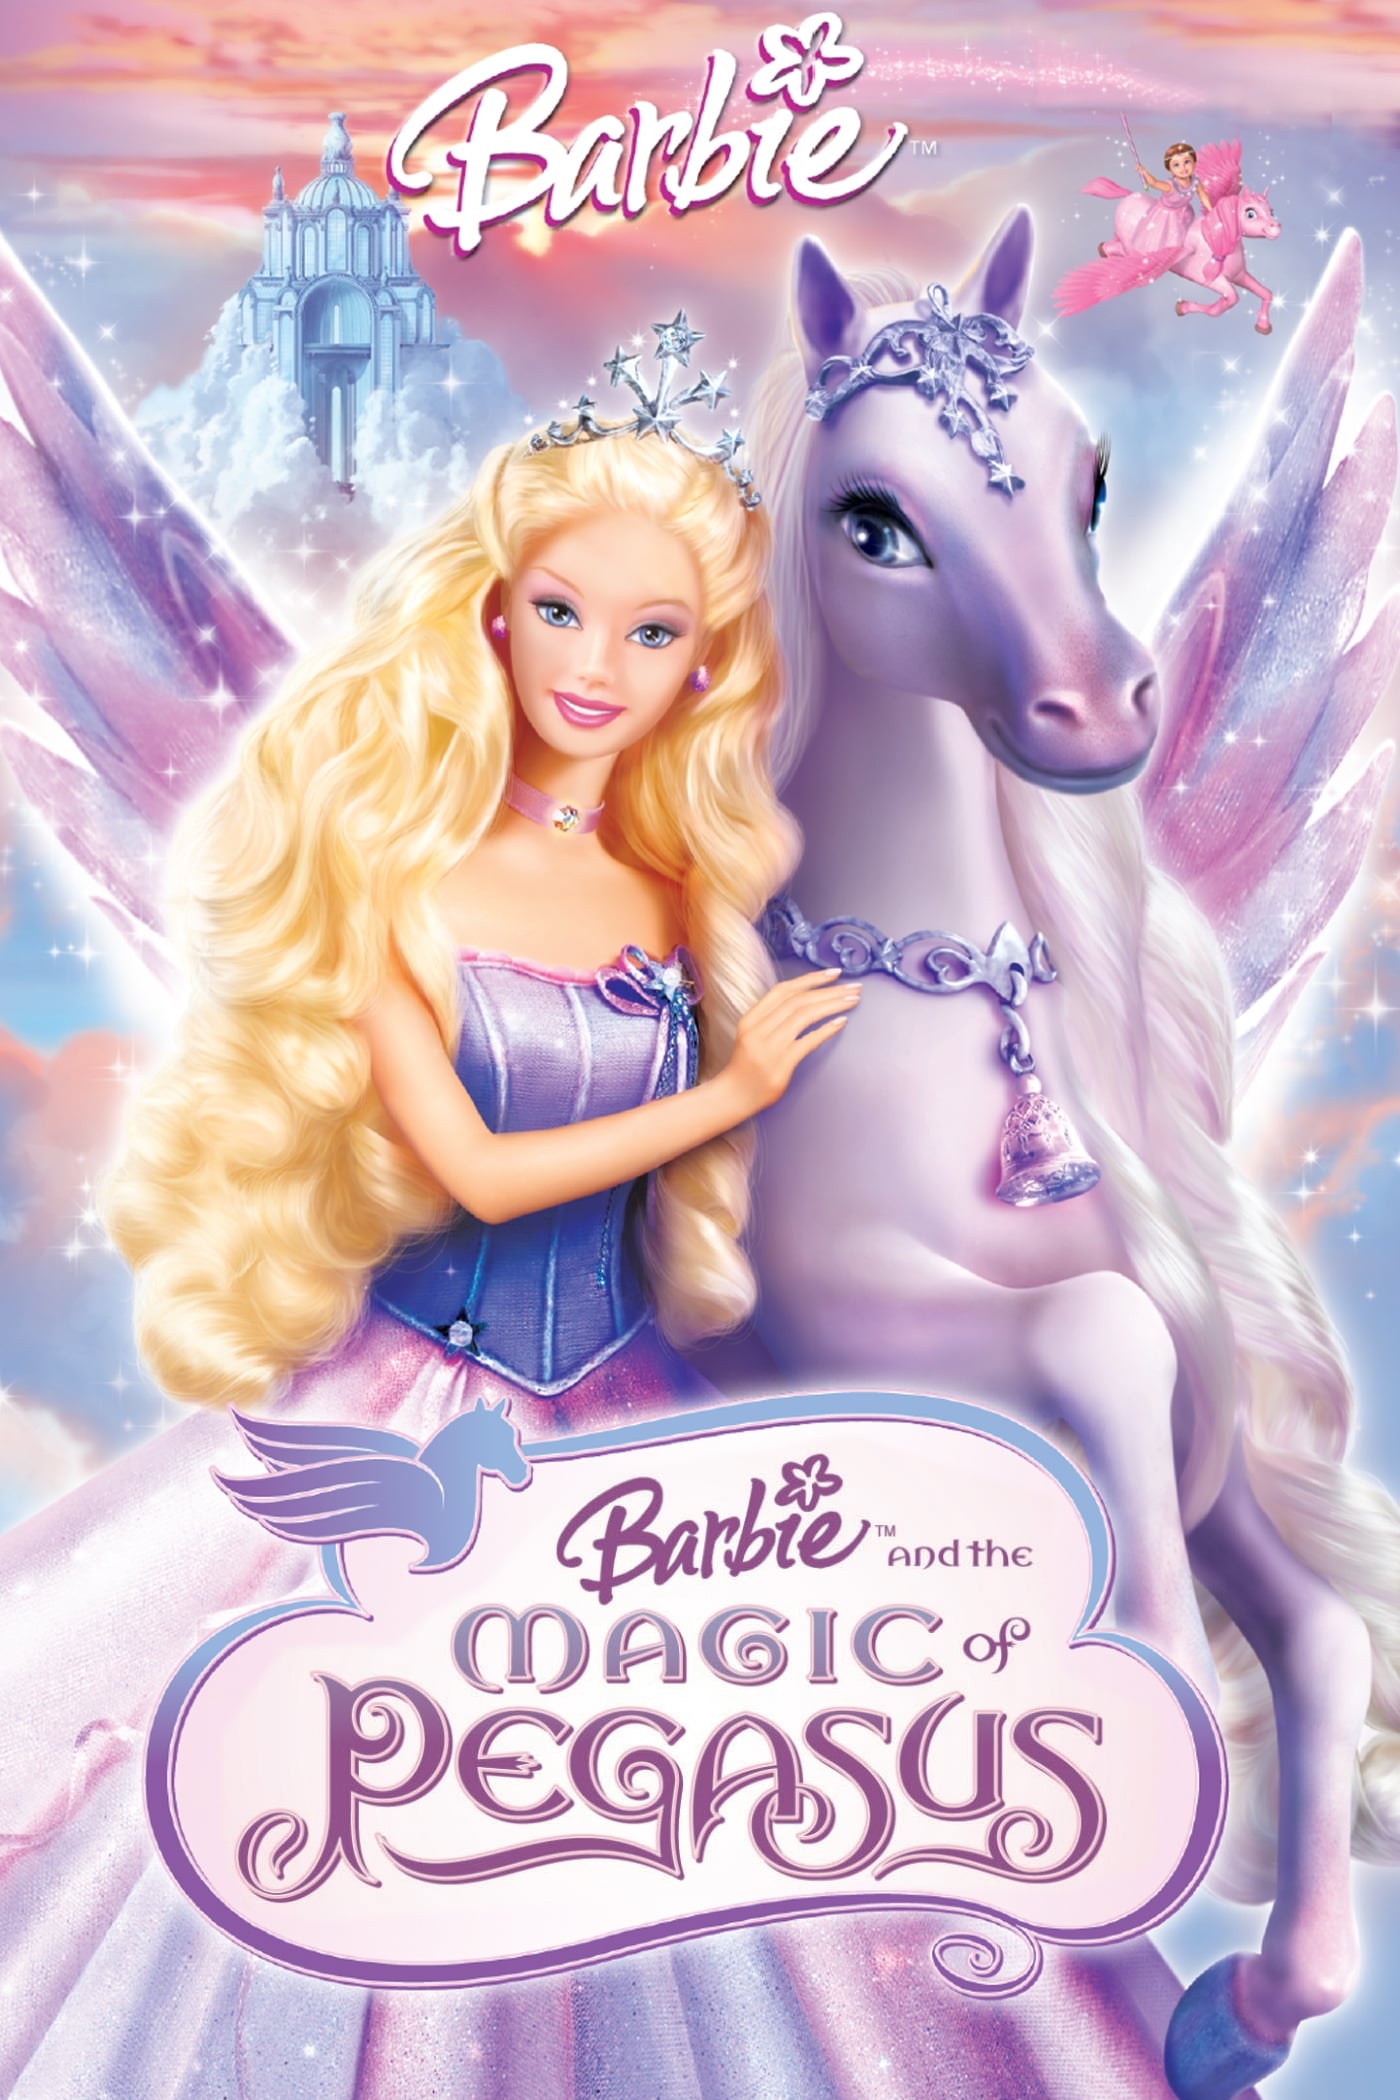 Barbie y La Magia de Pegaso (2005)